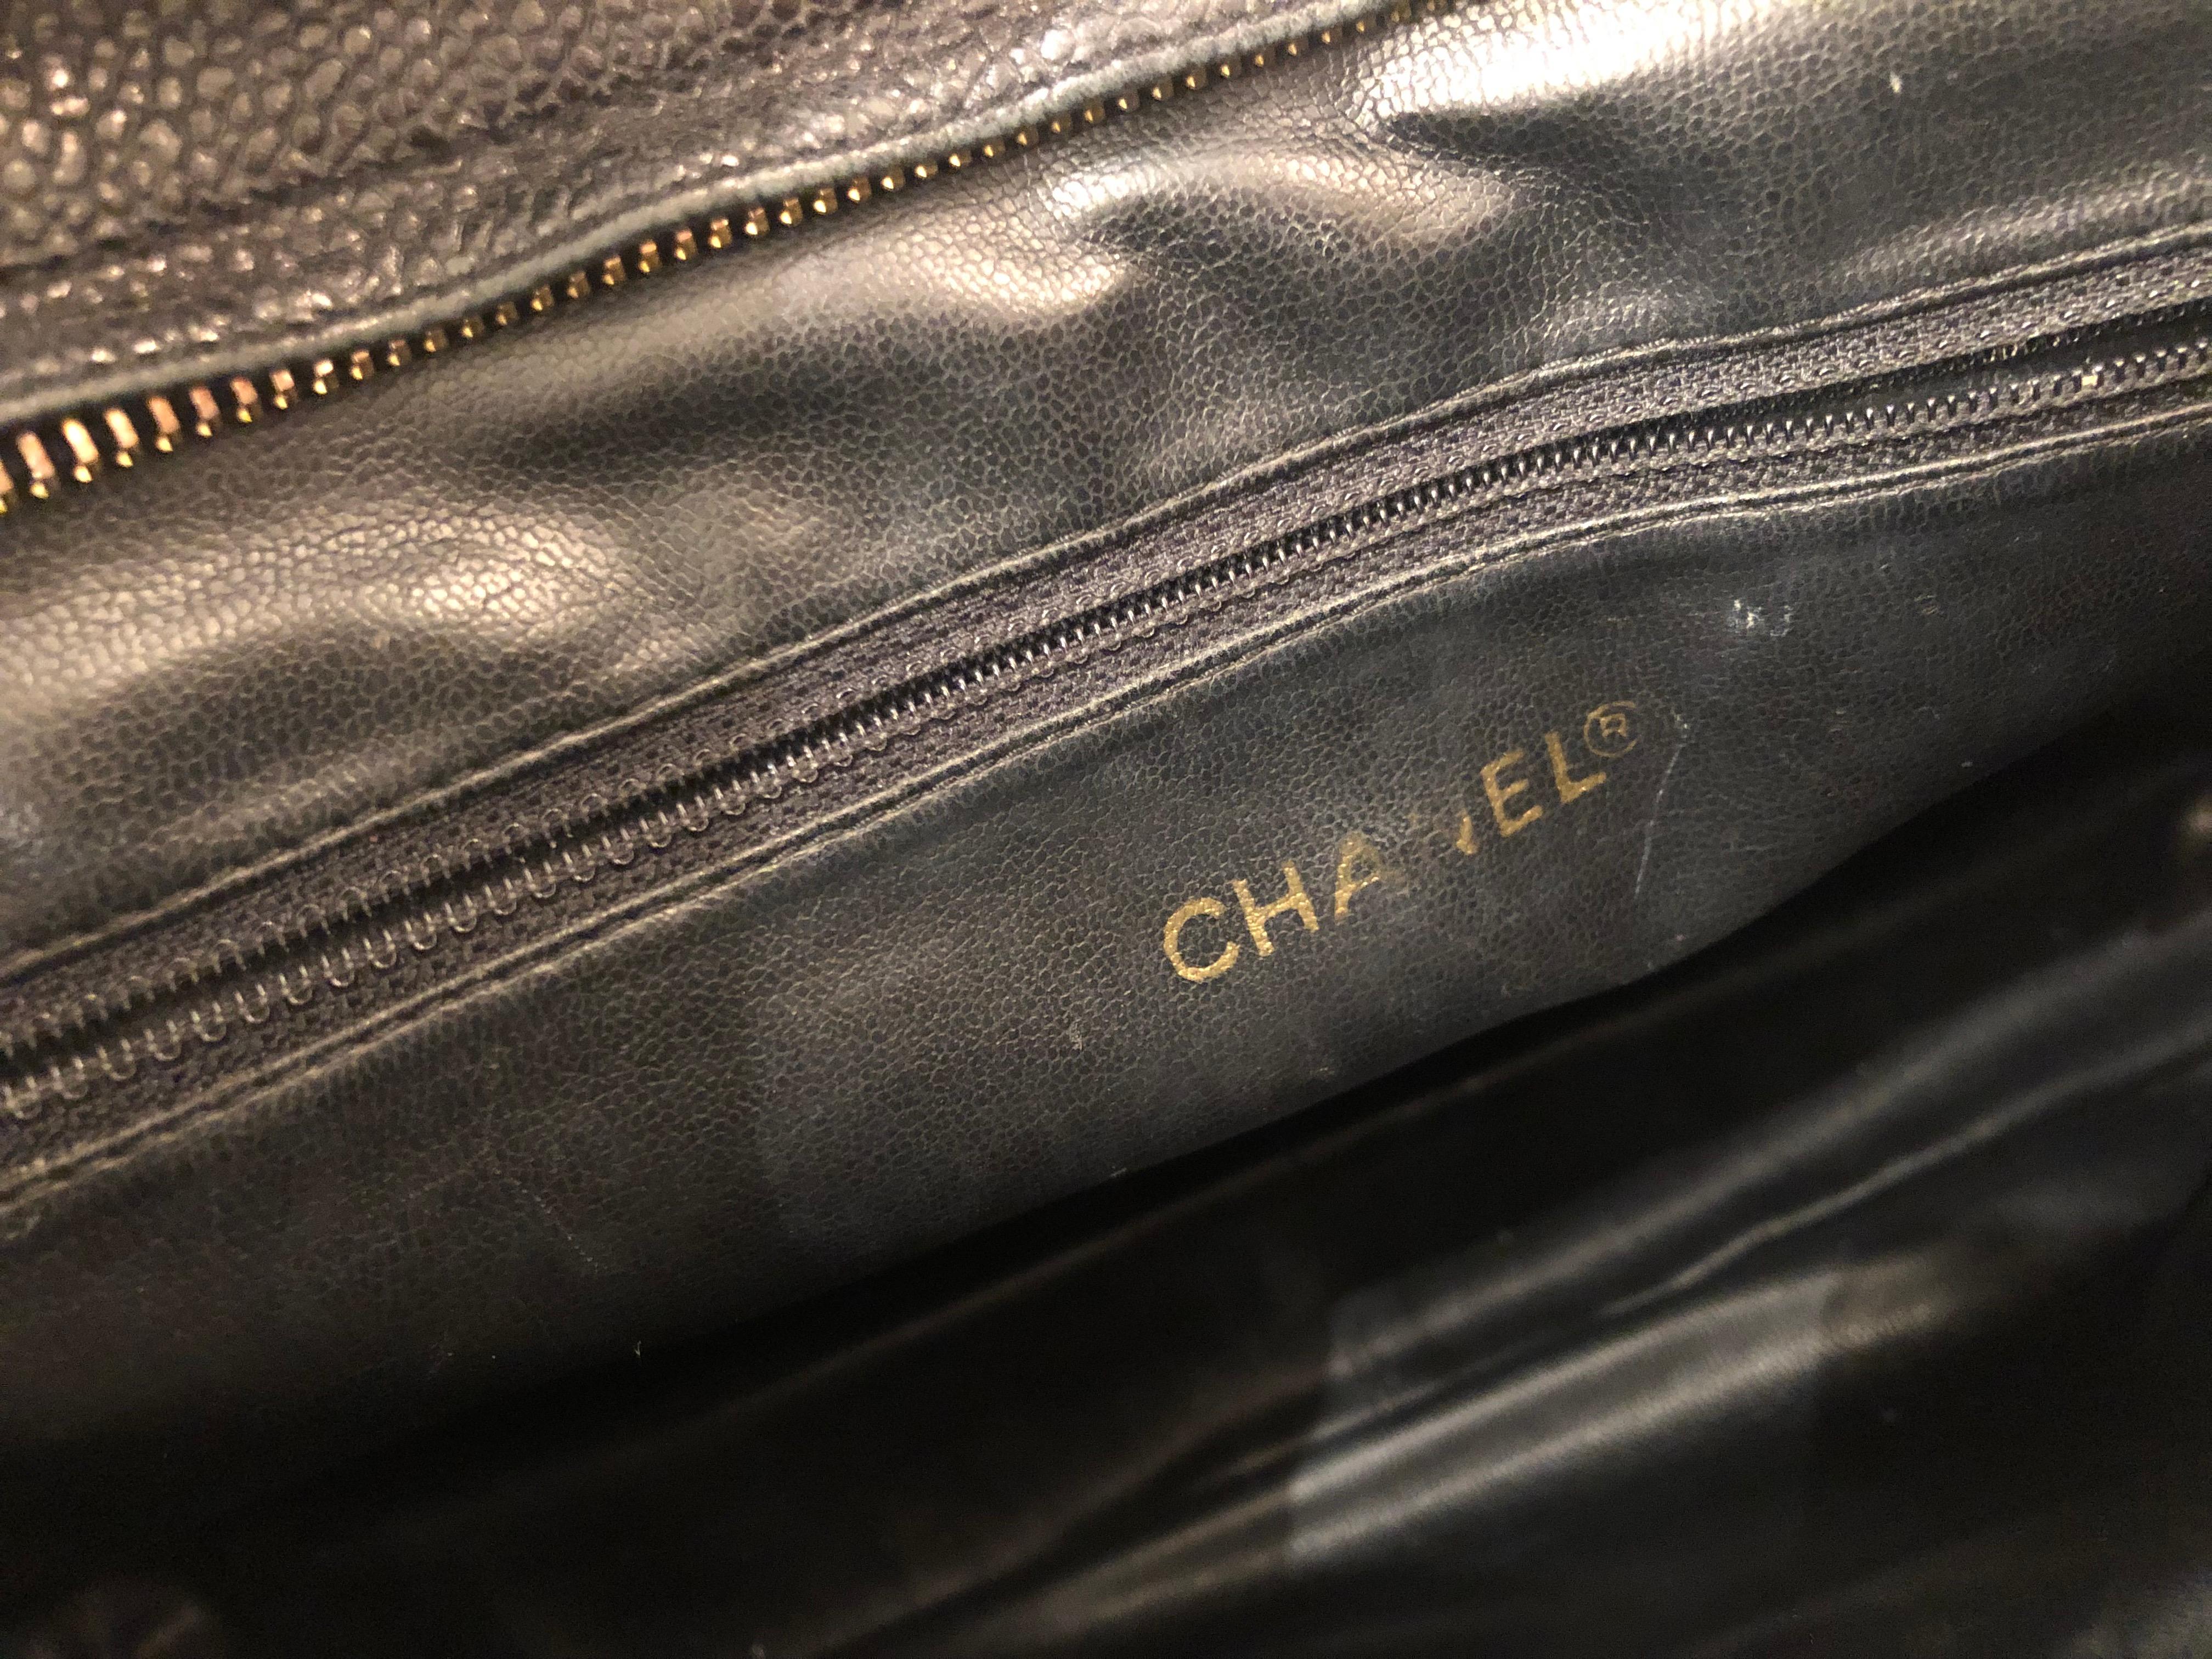 Iconic Chanel Vintage Black Caviar Leather Triple Logo Shoulder Bag, 1994 4